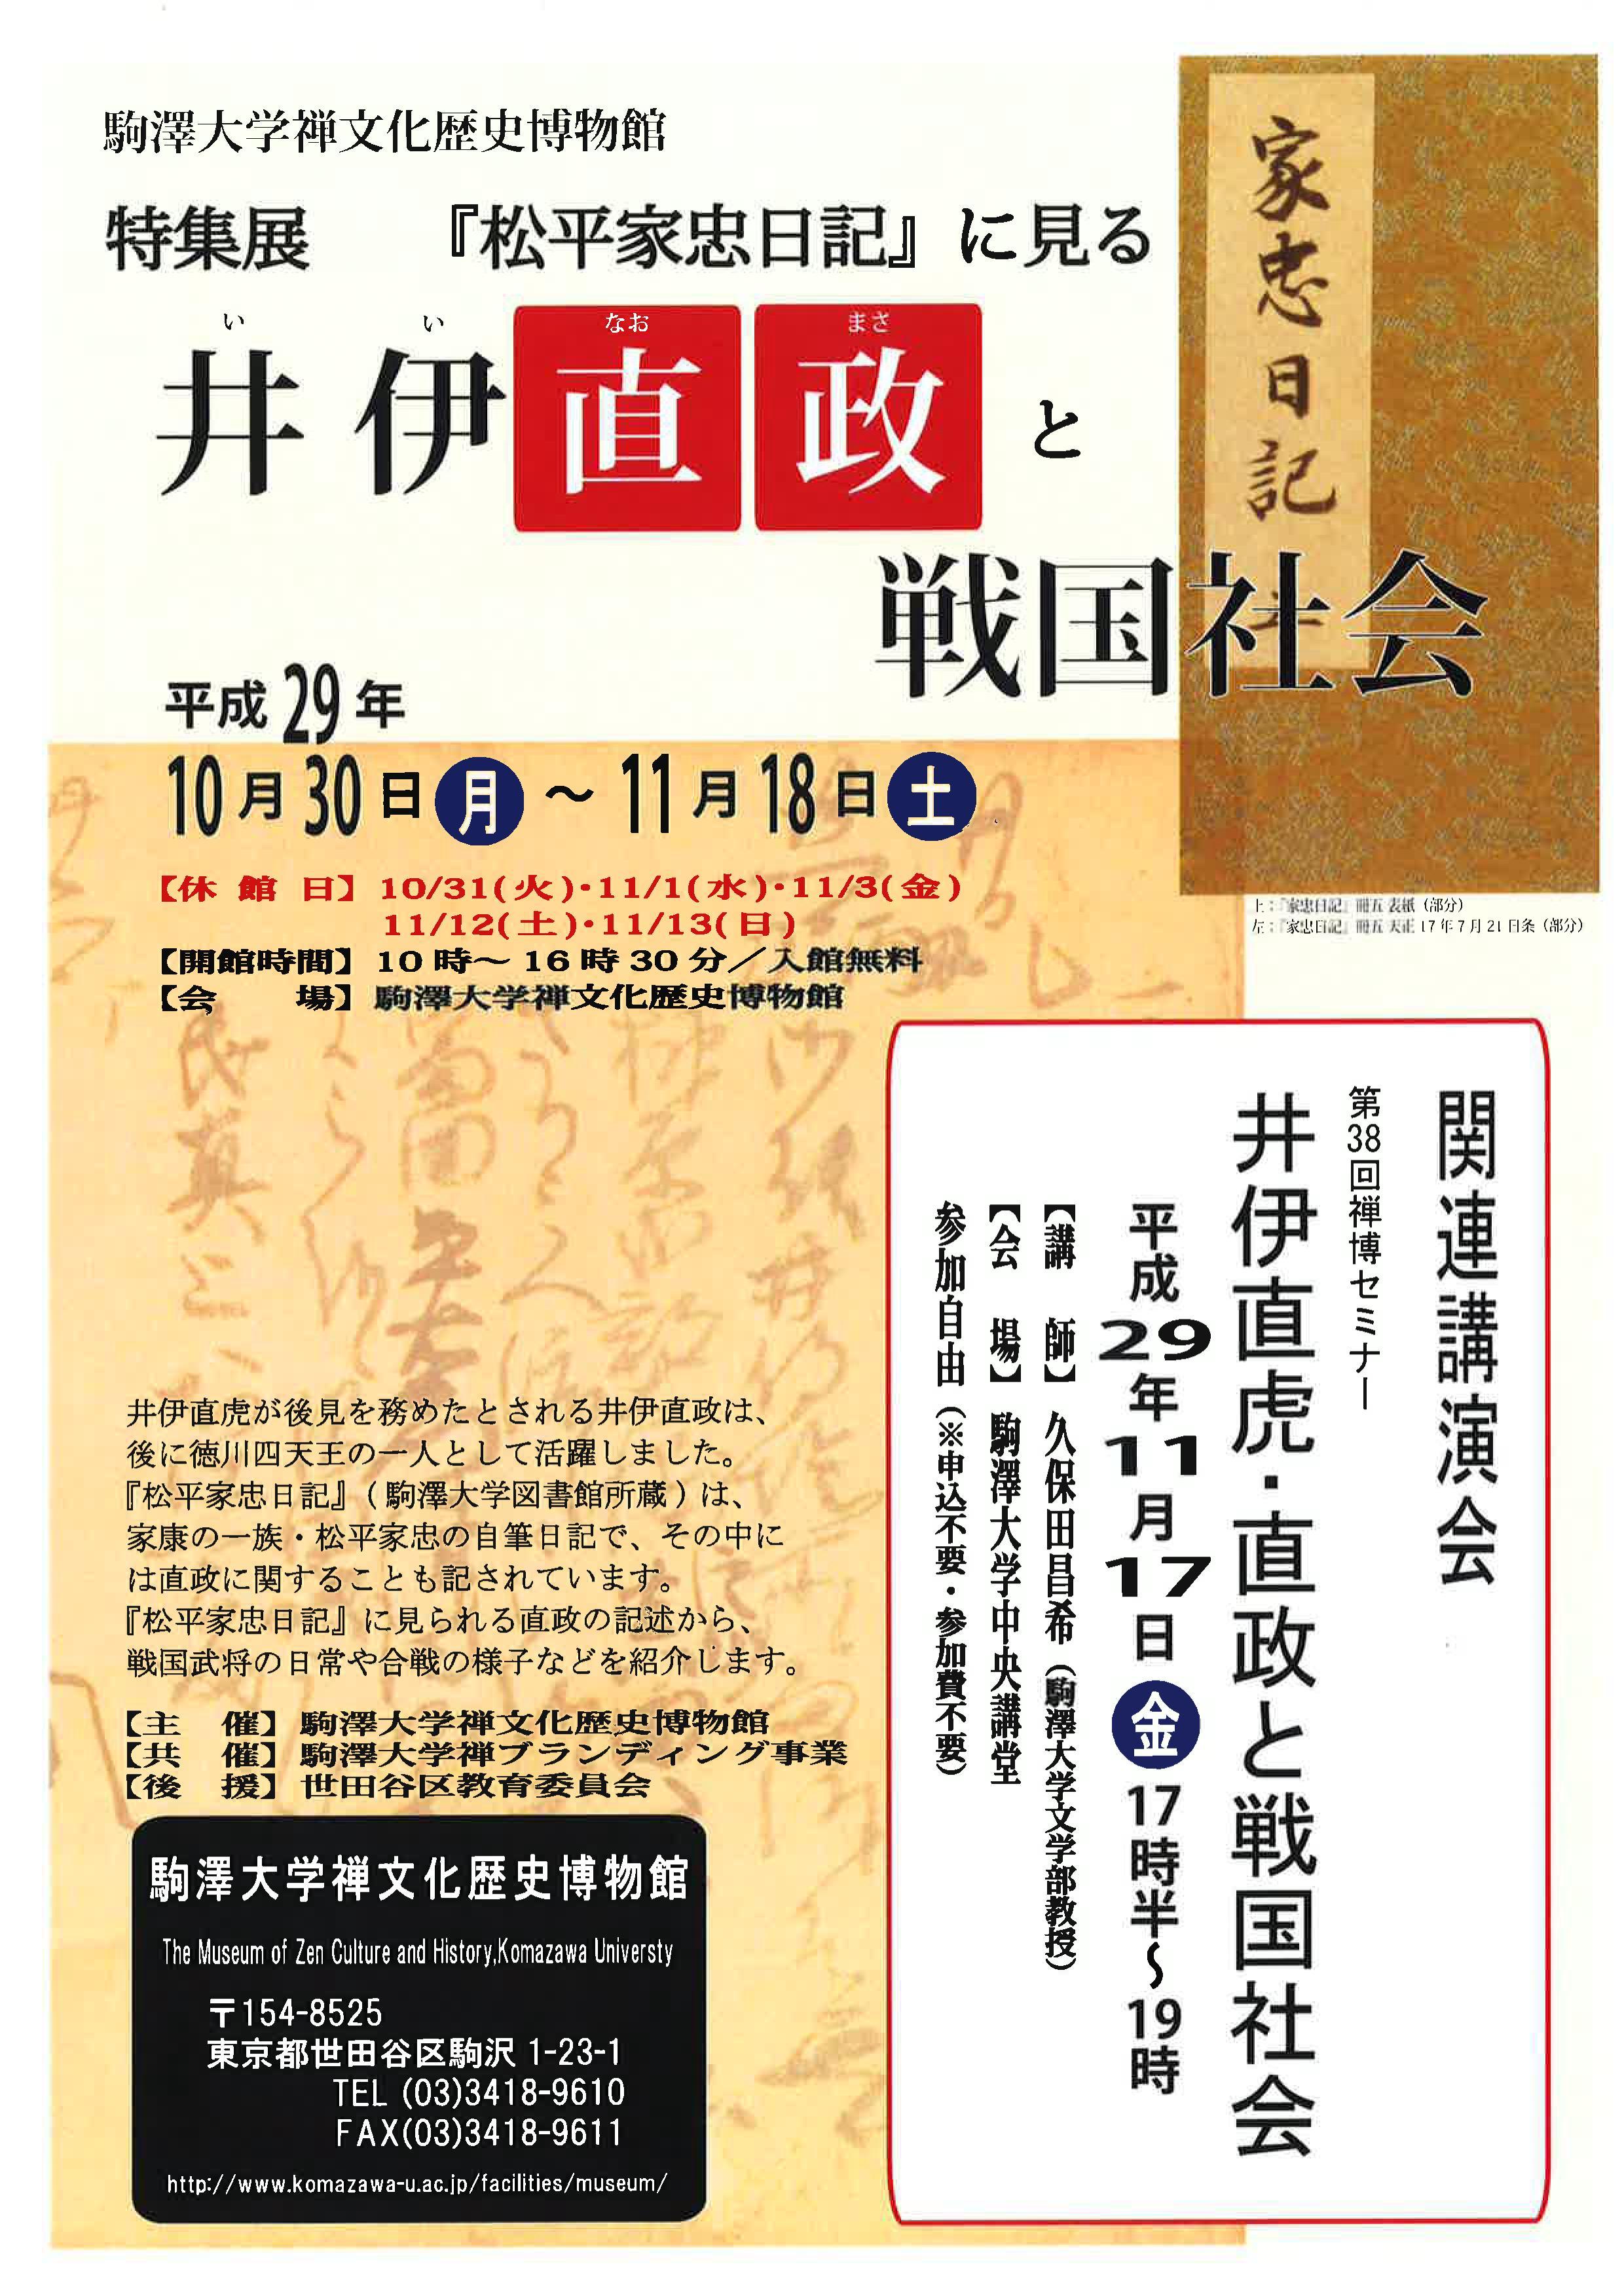 駒澤大学禅文化歴史博物館が11月17日に「第38回禅博セミナー」を開催 -- 井伊直虎・直政と戦国社会をテーマに